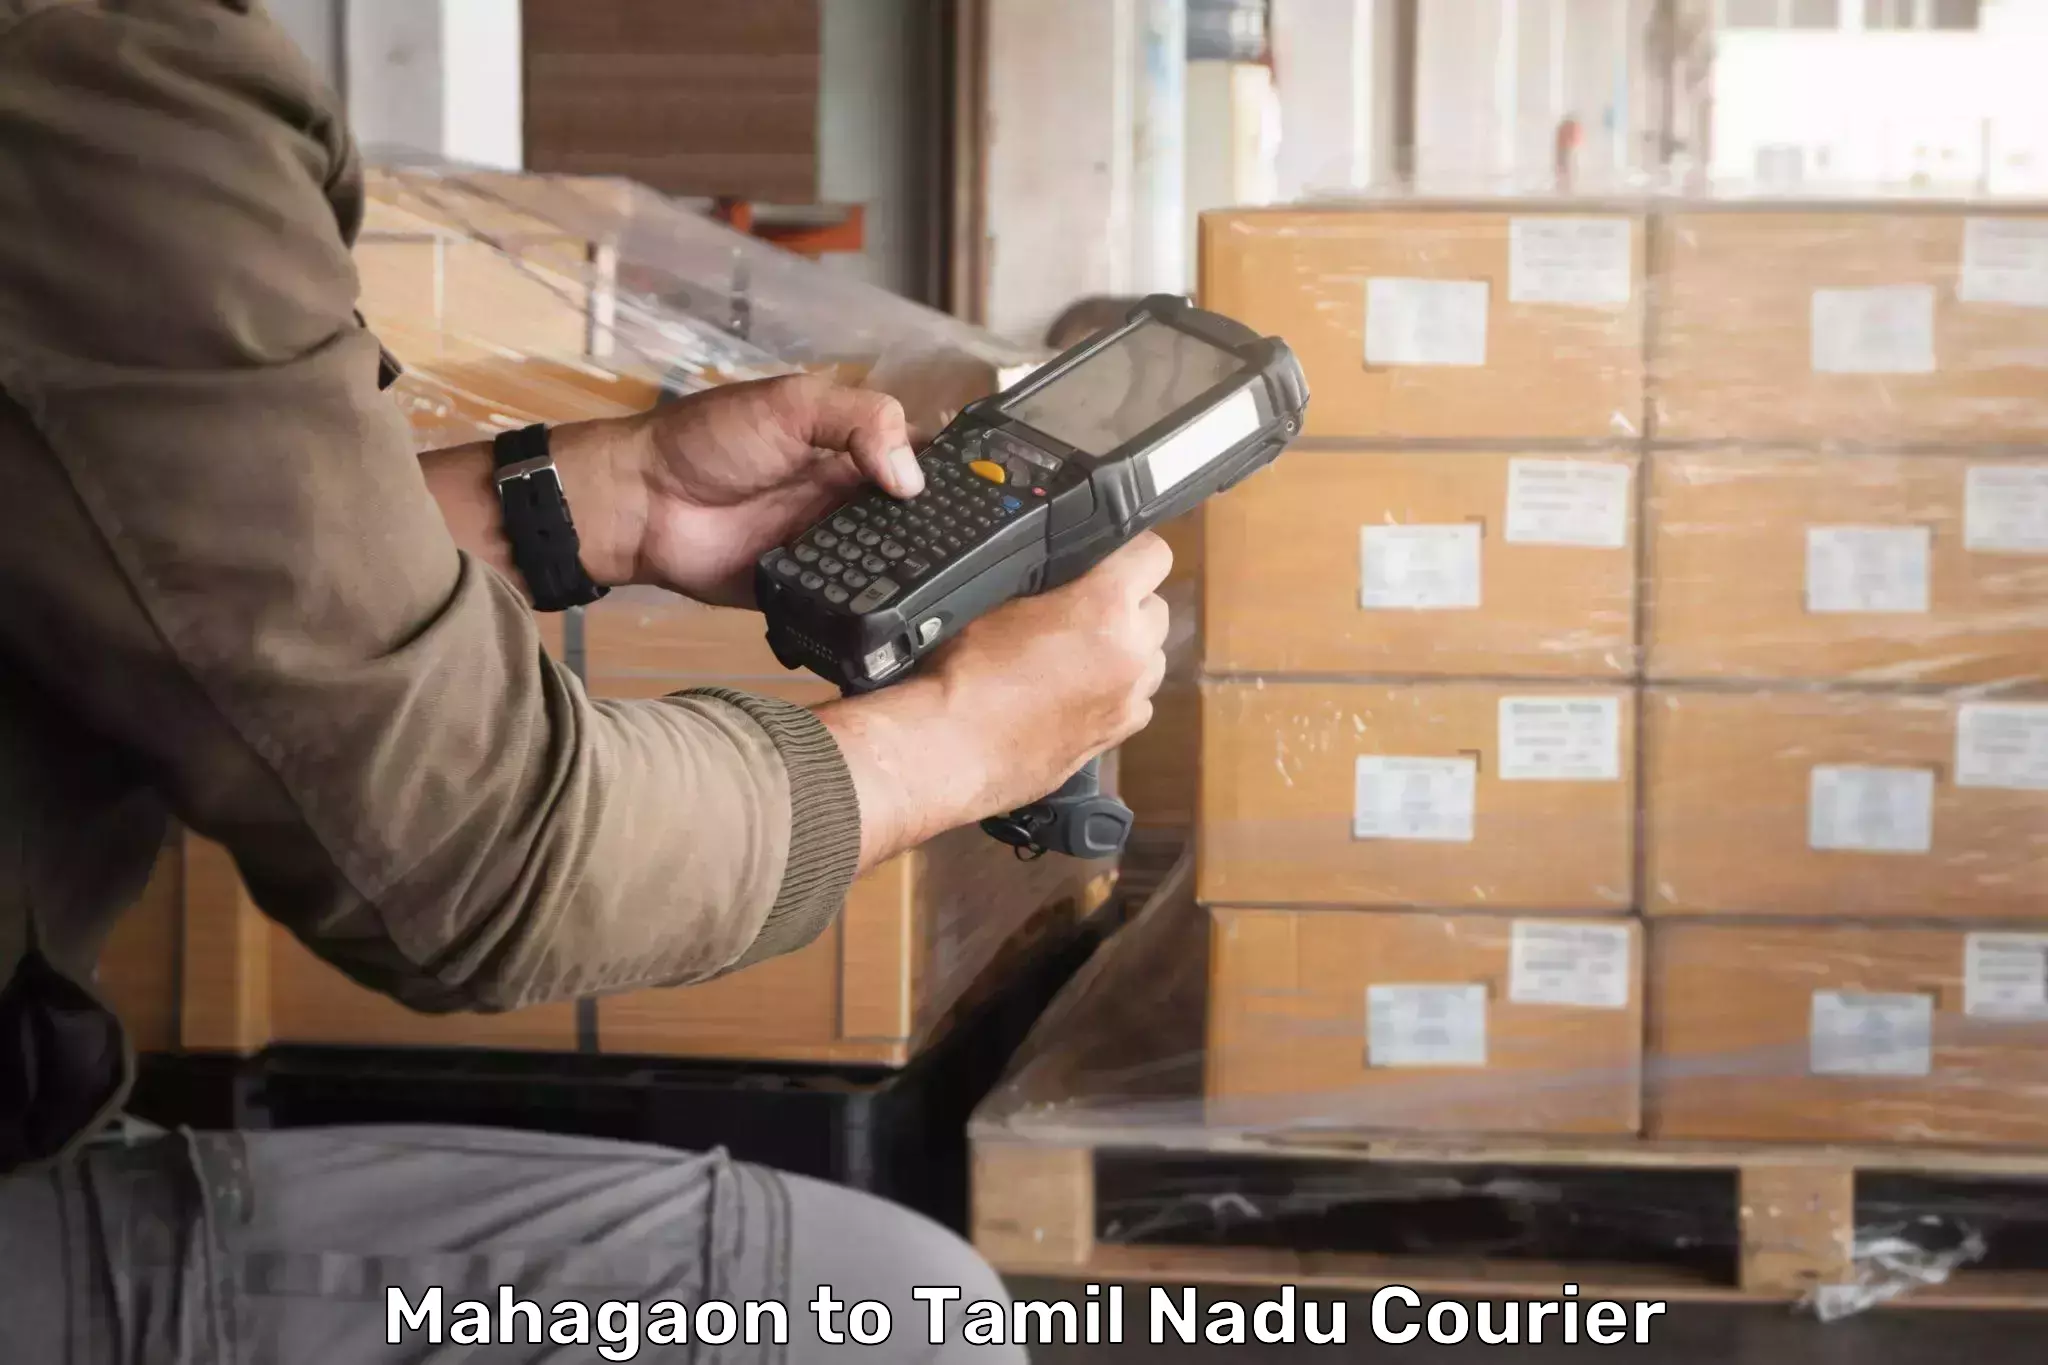 Express delivery capabilities Mahagaon to Valparai